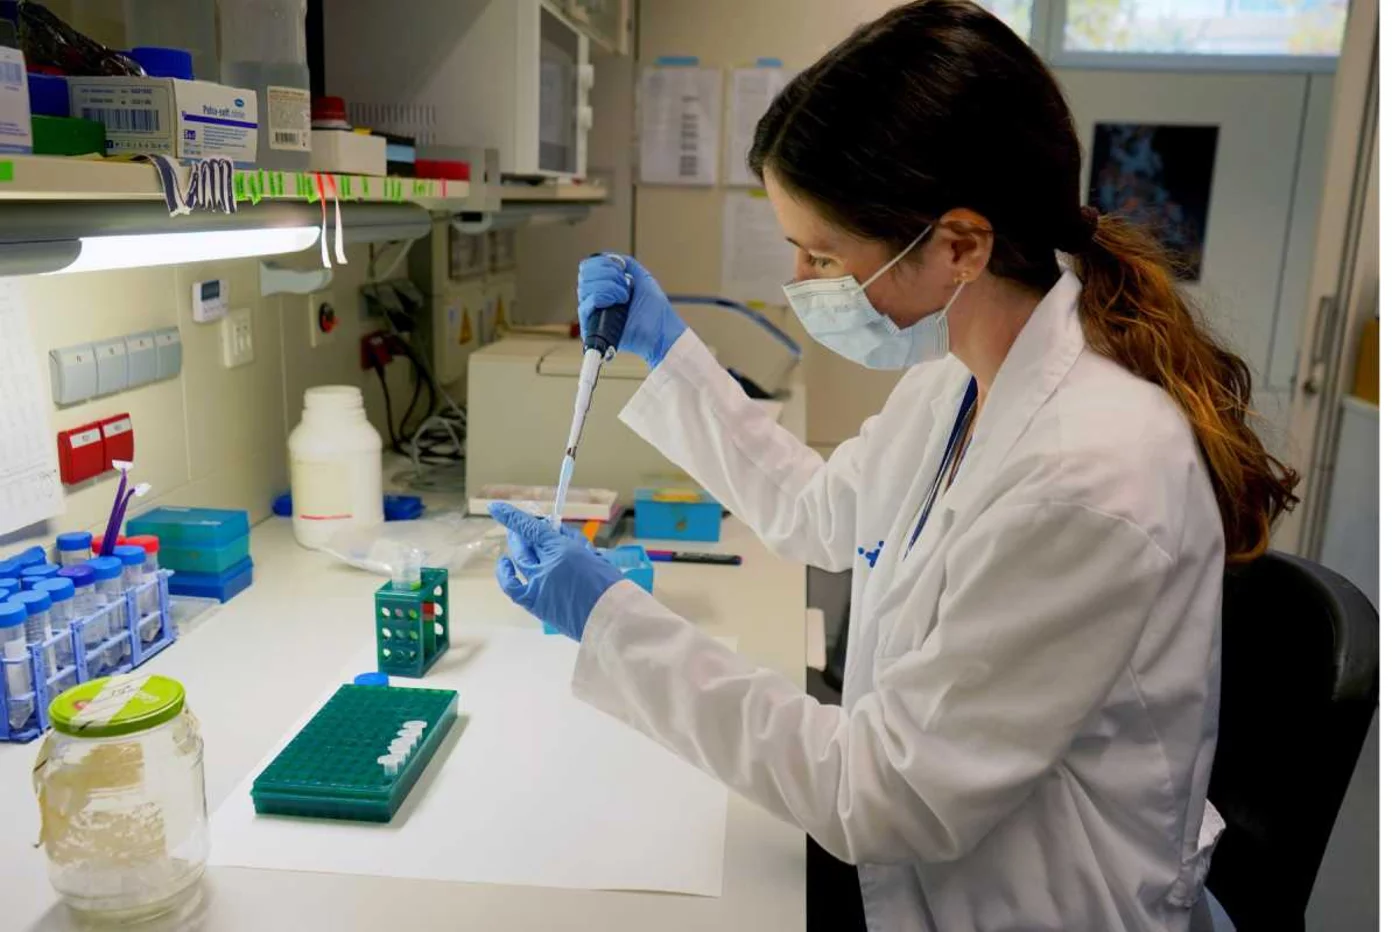 Kimberley McGrail analizando muestras en el laboratorio del VHIR. Foto: HOSPITAL VALL d'HEBRON